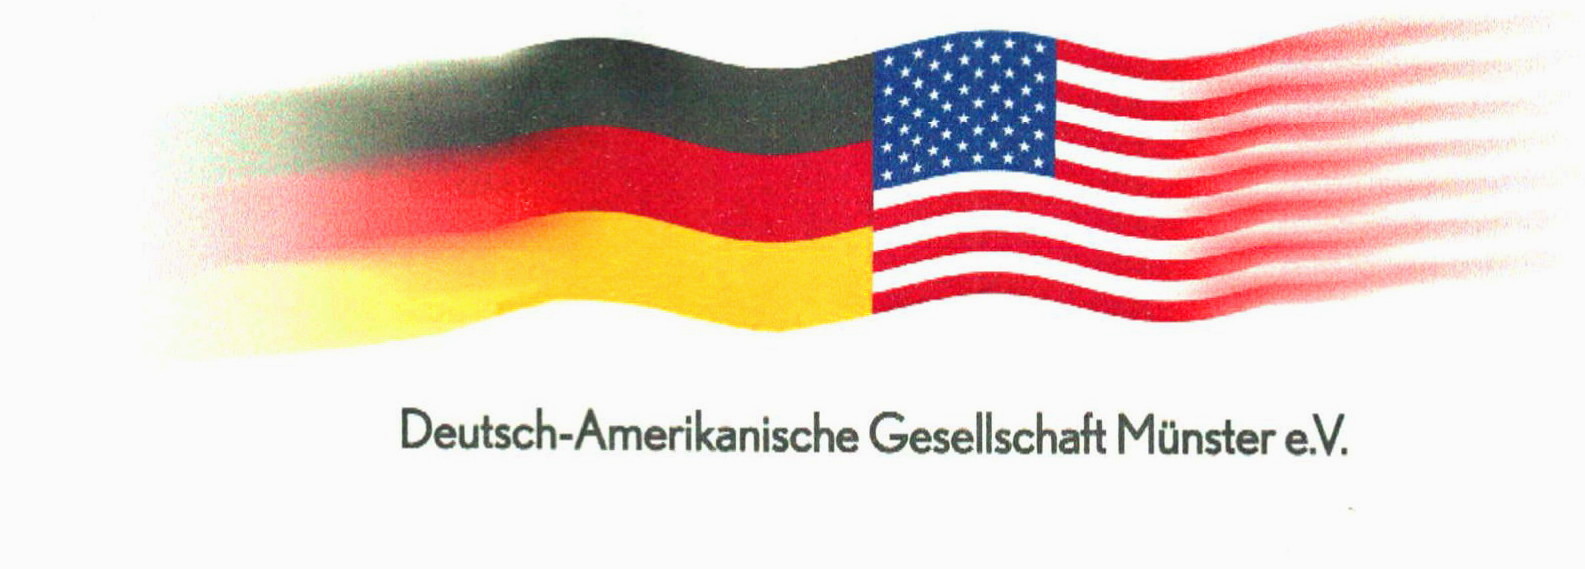 Deutsch-Amerikanische Gesellschaft Münster